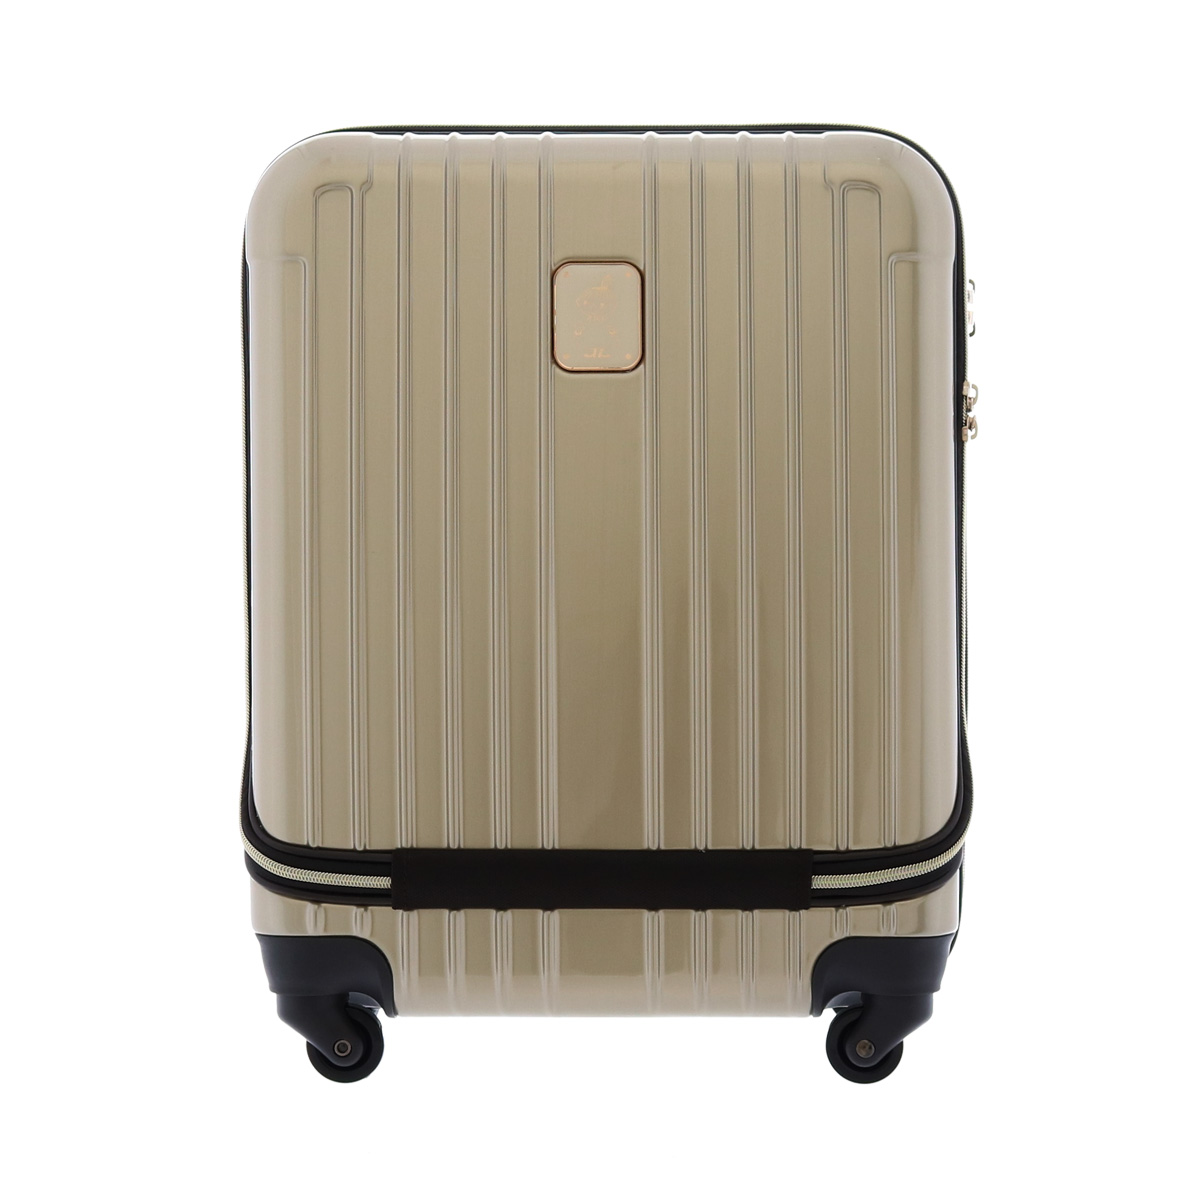 ムーミン MOOMIN キャリーケース MM2-009 46cm スーツケース フロントオープン キャリーカート TSAロック搭載 1年保証